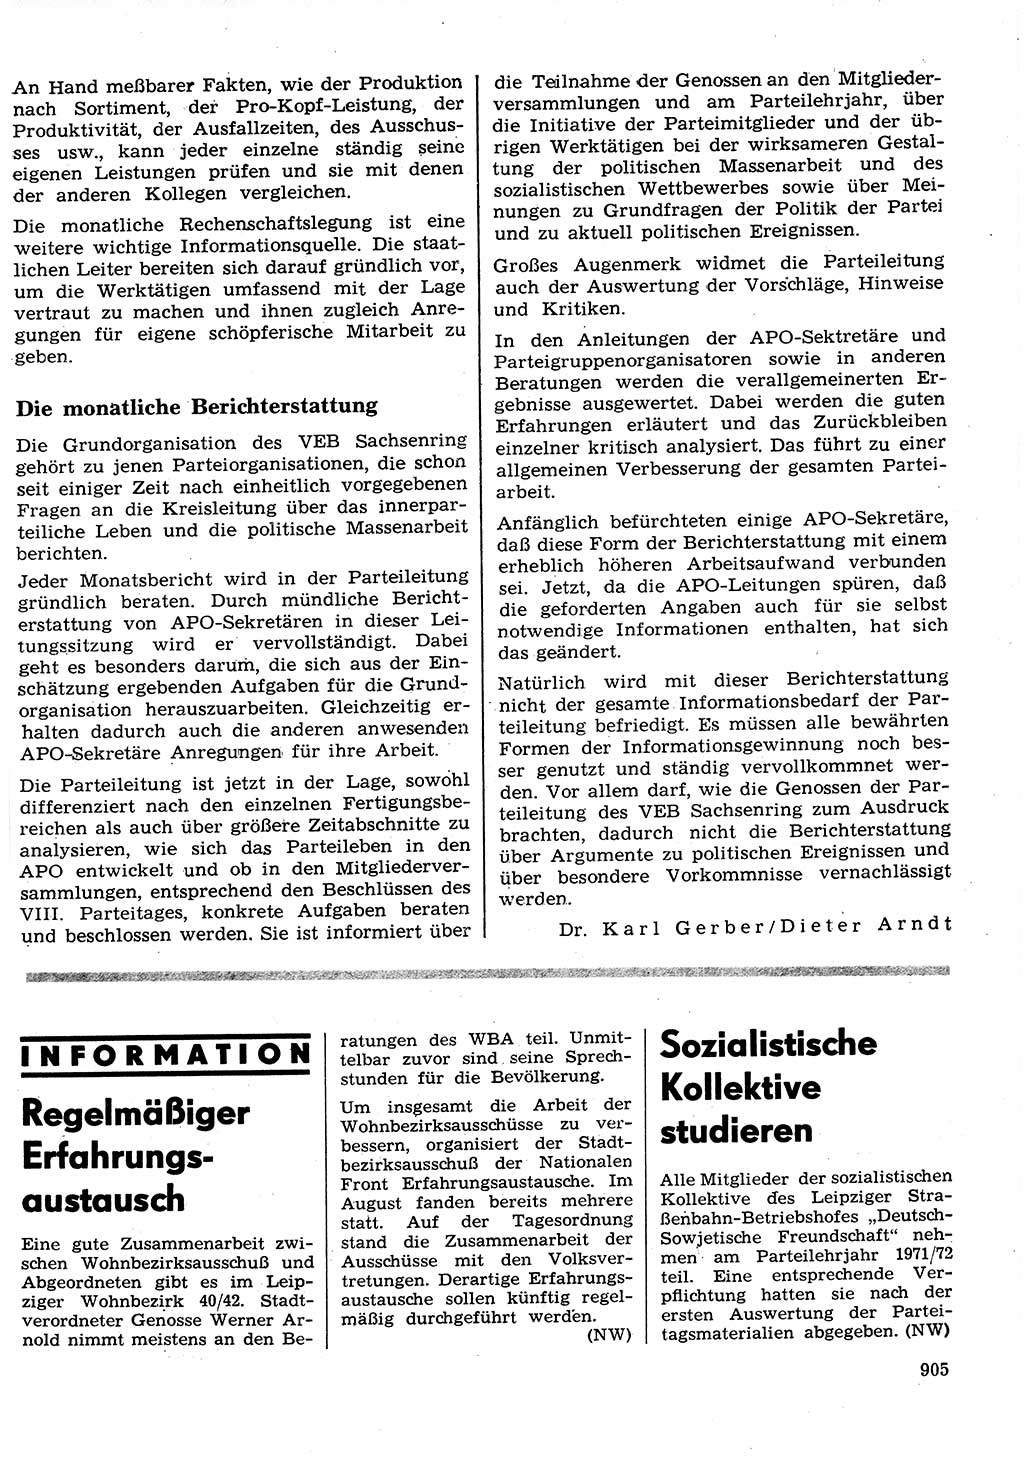 Neuer Weg (NW), Organ des Zentralkomitees (ZK) der SED (Sozialistische Einheitspartei Deutschlands) für Fragen des Parteilebens, 26. Jahrgang [Deutsche Demokratische Republik (DDR)] 1971, Seite 905 (NW ZK SED DDR 1971, S. 905)